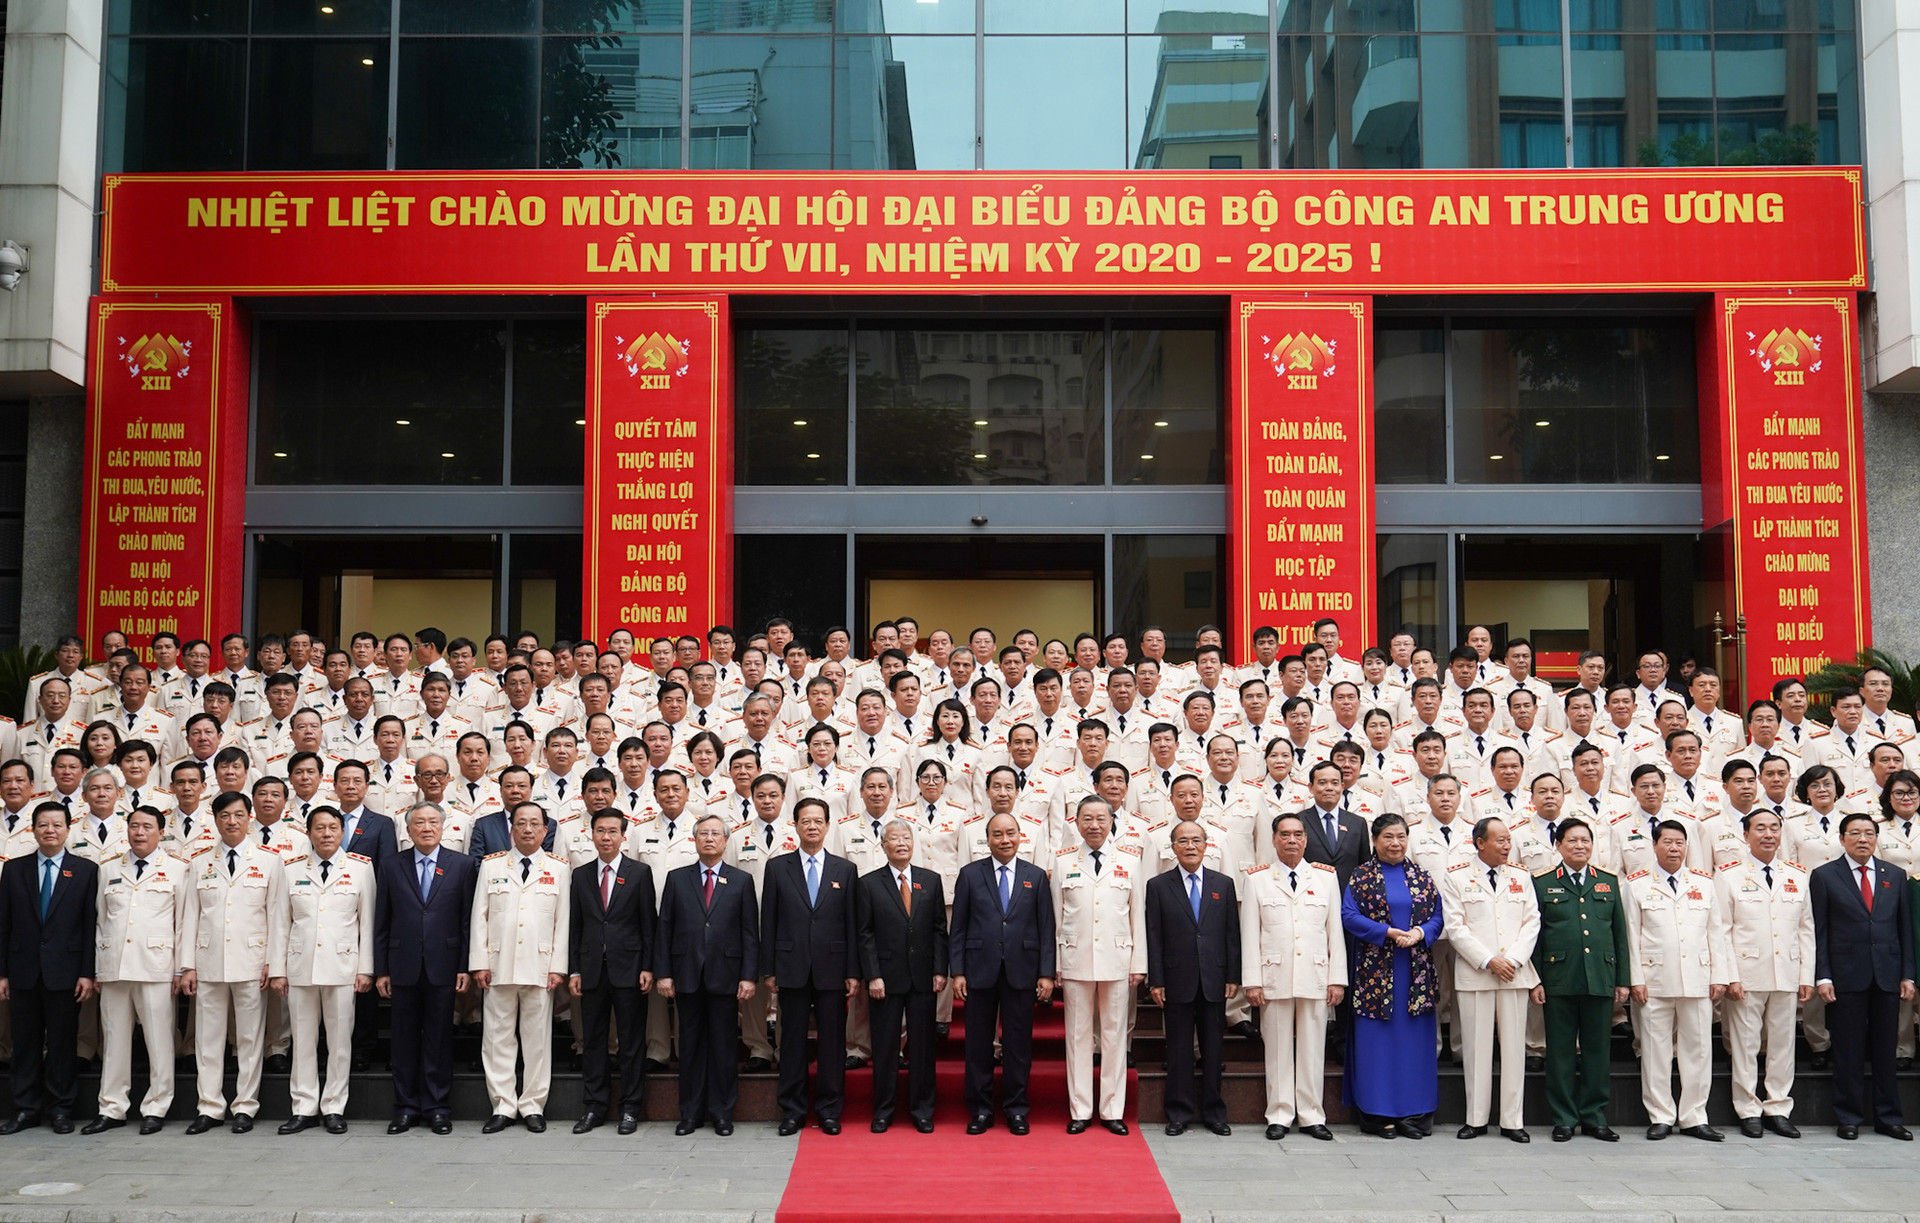 Thủ tướng Nguyễn Xuân Phúc dự Đại hội Đảng bộ Công an Trung ương - Ảnh 1.